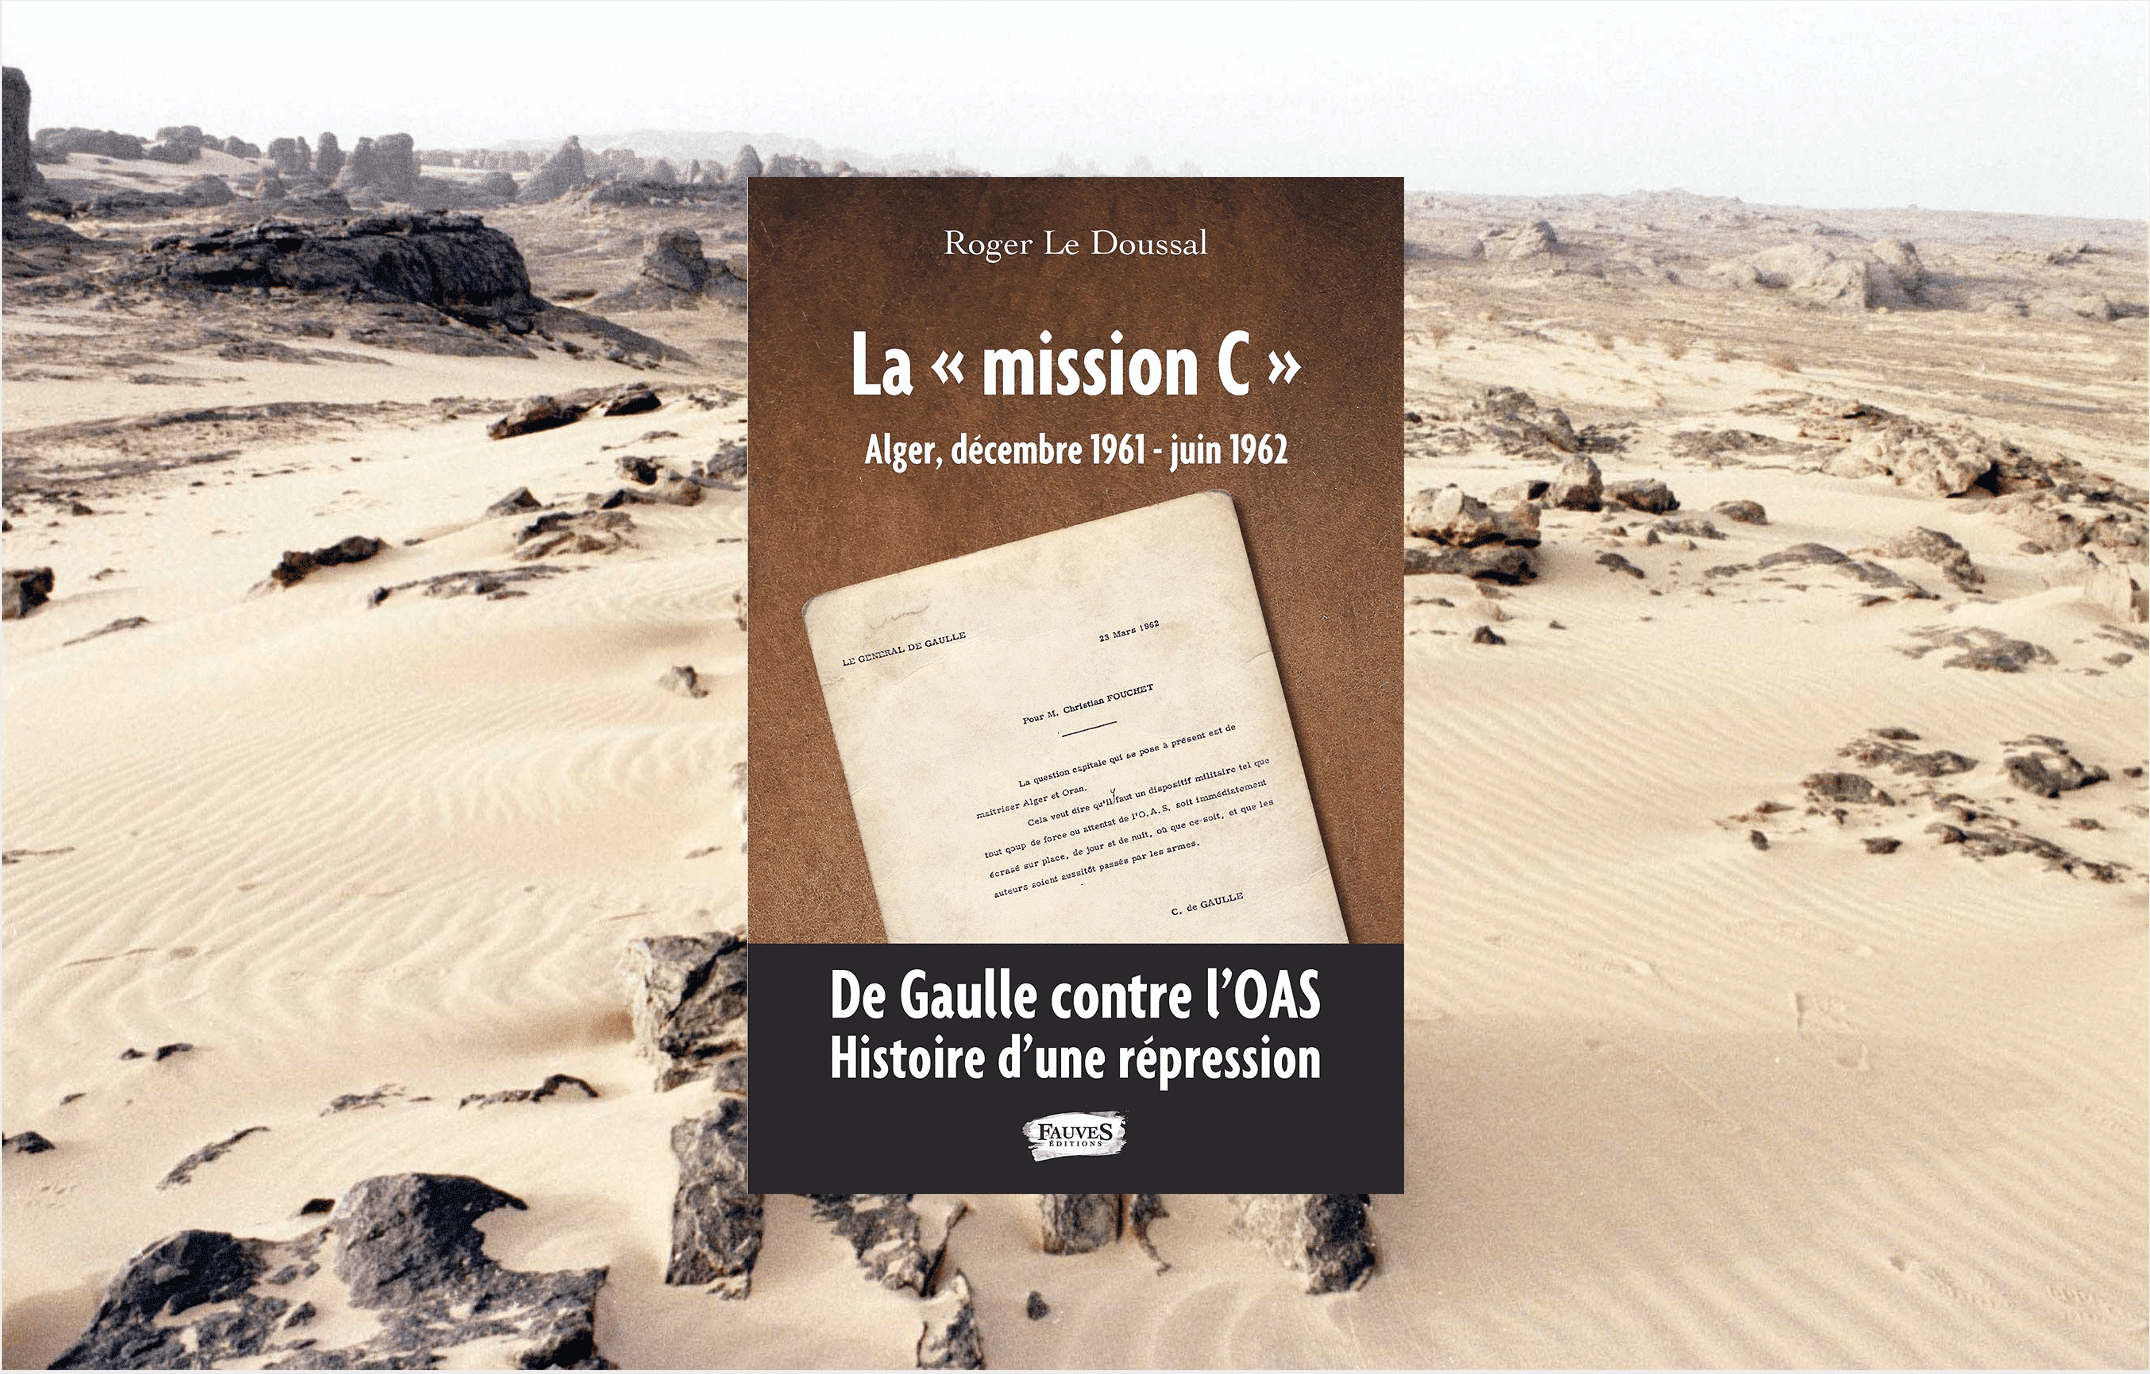 Désert du Sahara au sud de l'Algérie (c) Sipa 00473676_000017